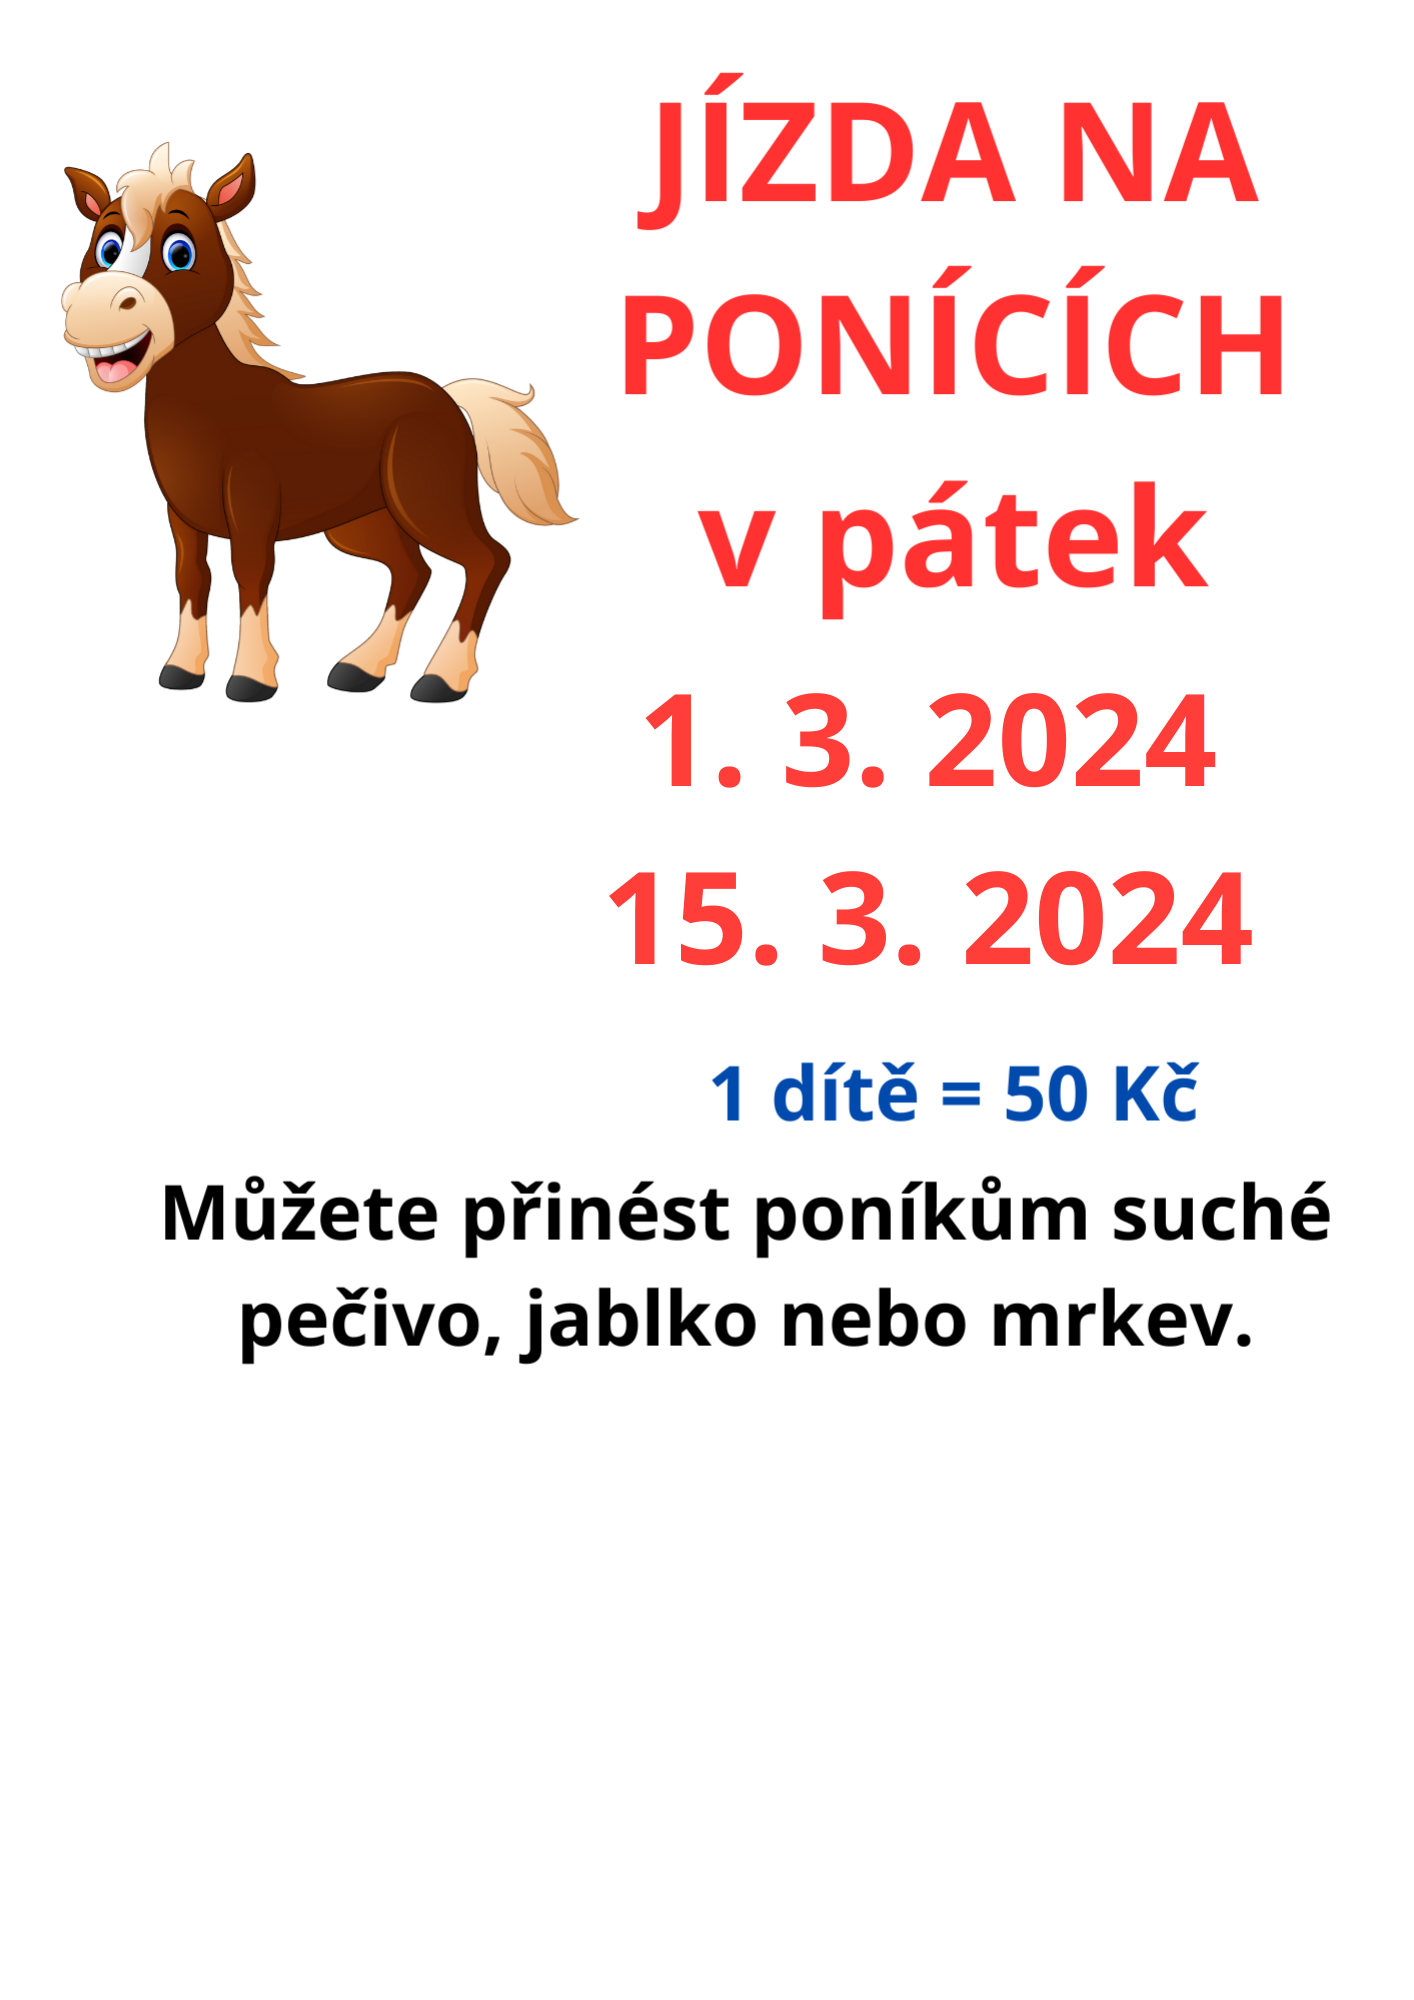 ponici.png (305 KB)